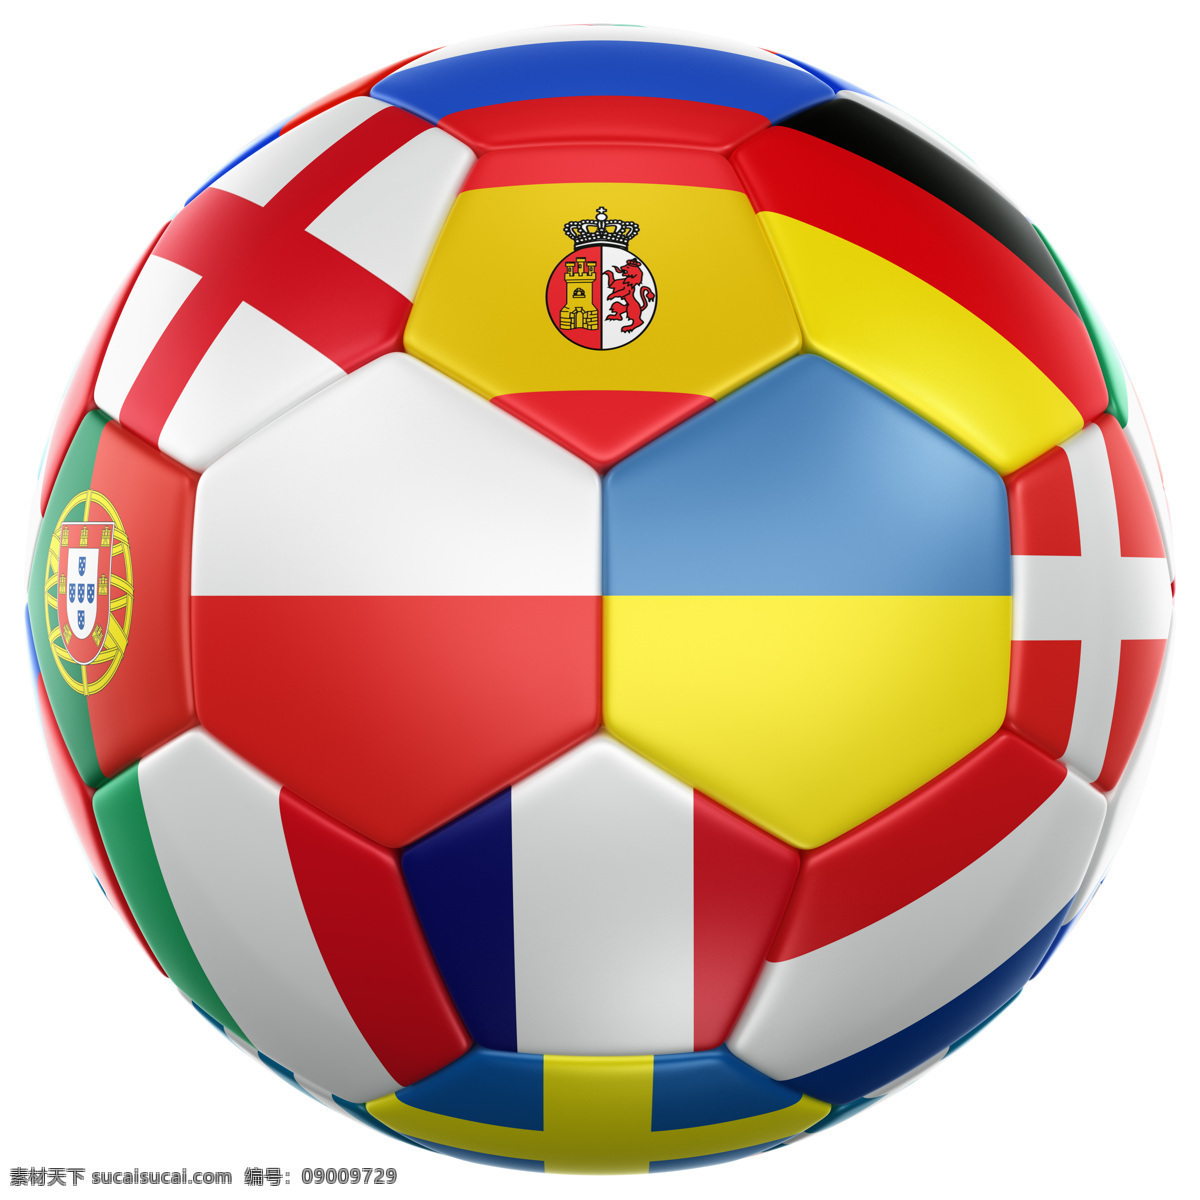 国旗 国旗素材 足球上的国旗 创意足球 彩色足球 欧洲 欧洲杯 足球 足球摄影 足球素材 2012 摄影图库 体育运动 生活百科 白色